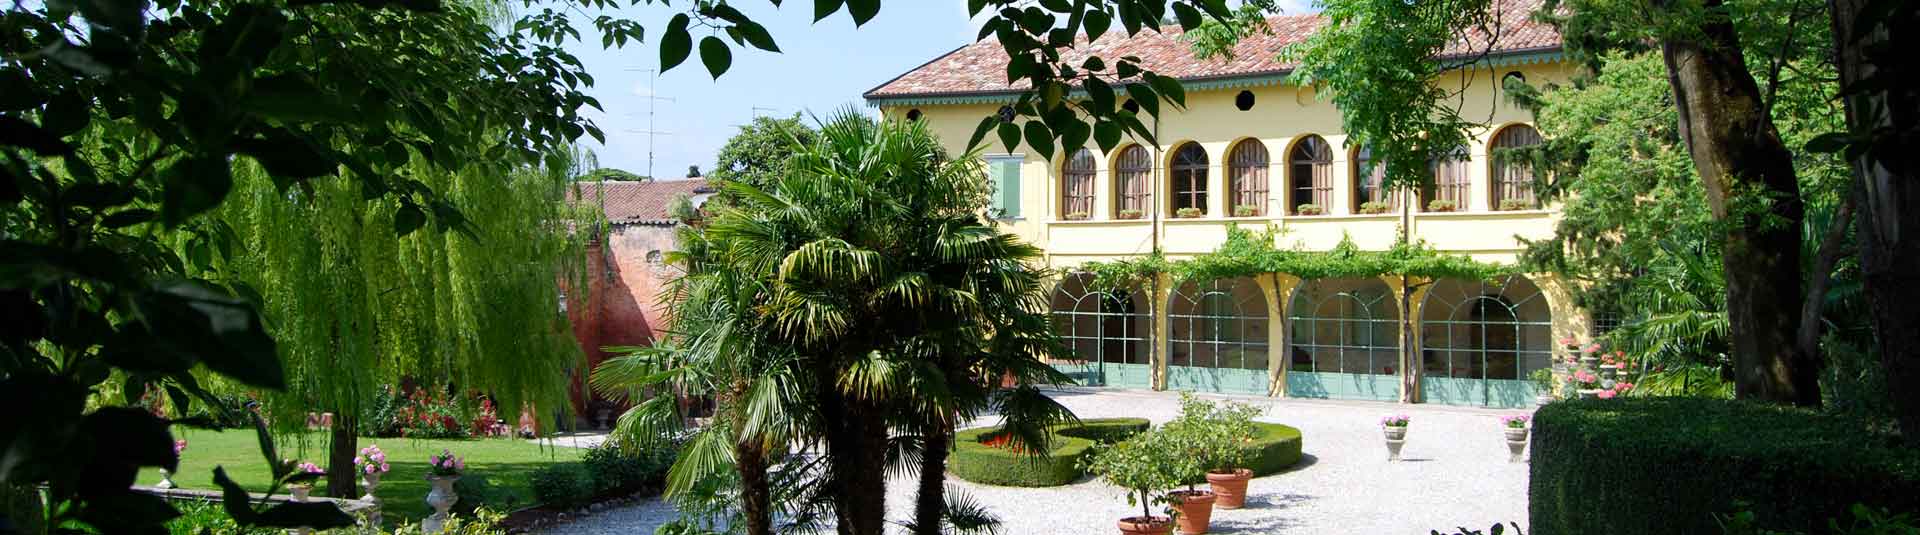 Villa-Avesani